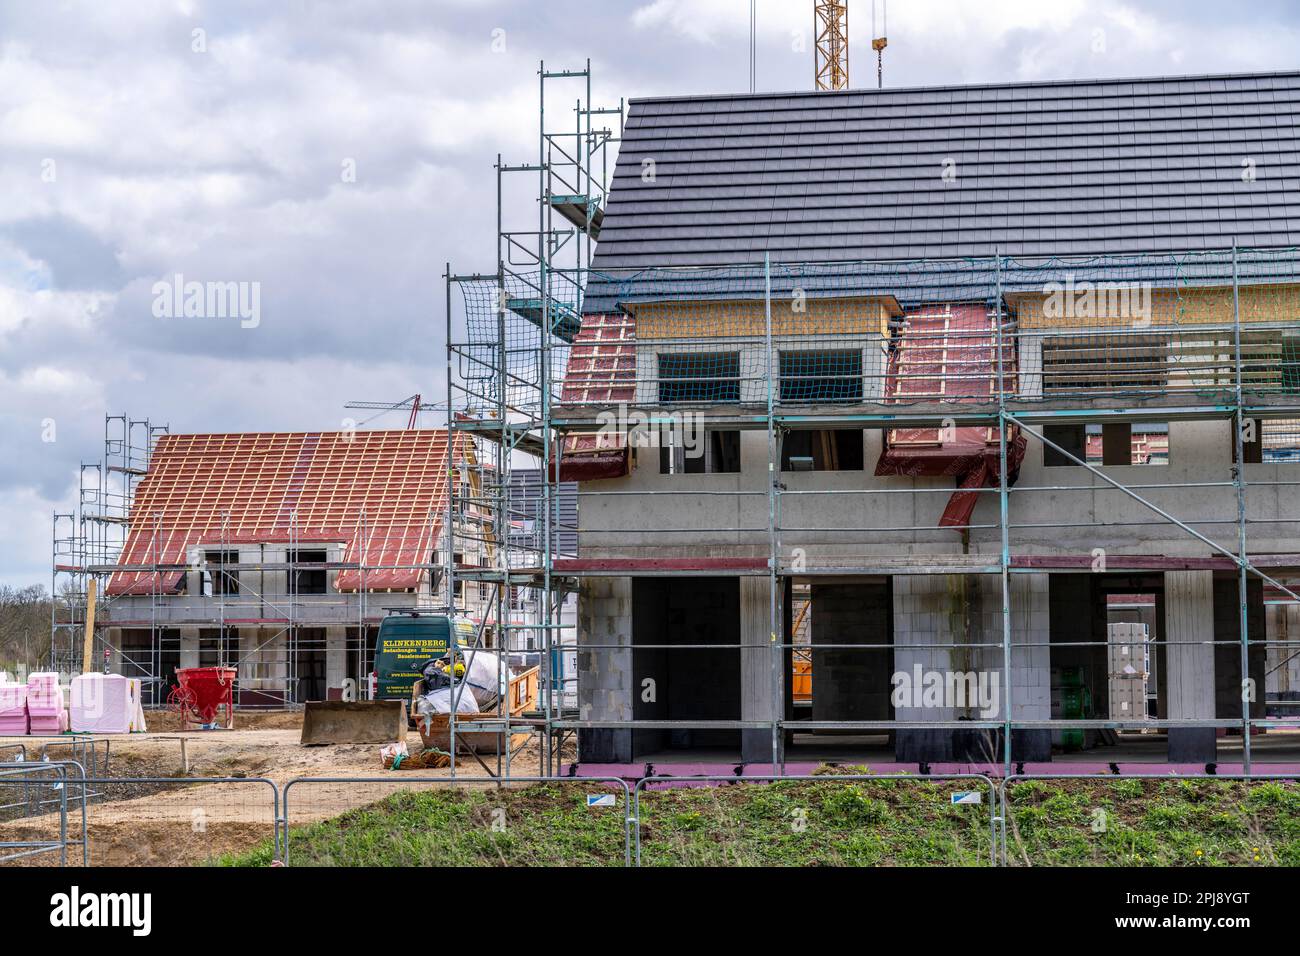 Nouveau quartier de développement, environ 140 villas individuelles et semi-individuelles en cours de construction dans le sud de Duisburg, différents développeurs, coquillages, constructio Banque D'Images